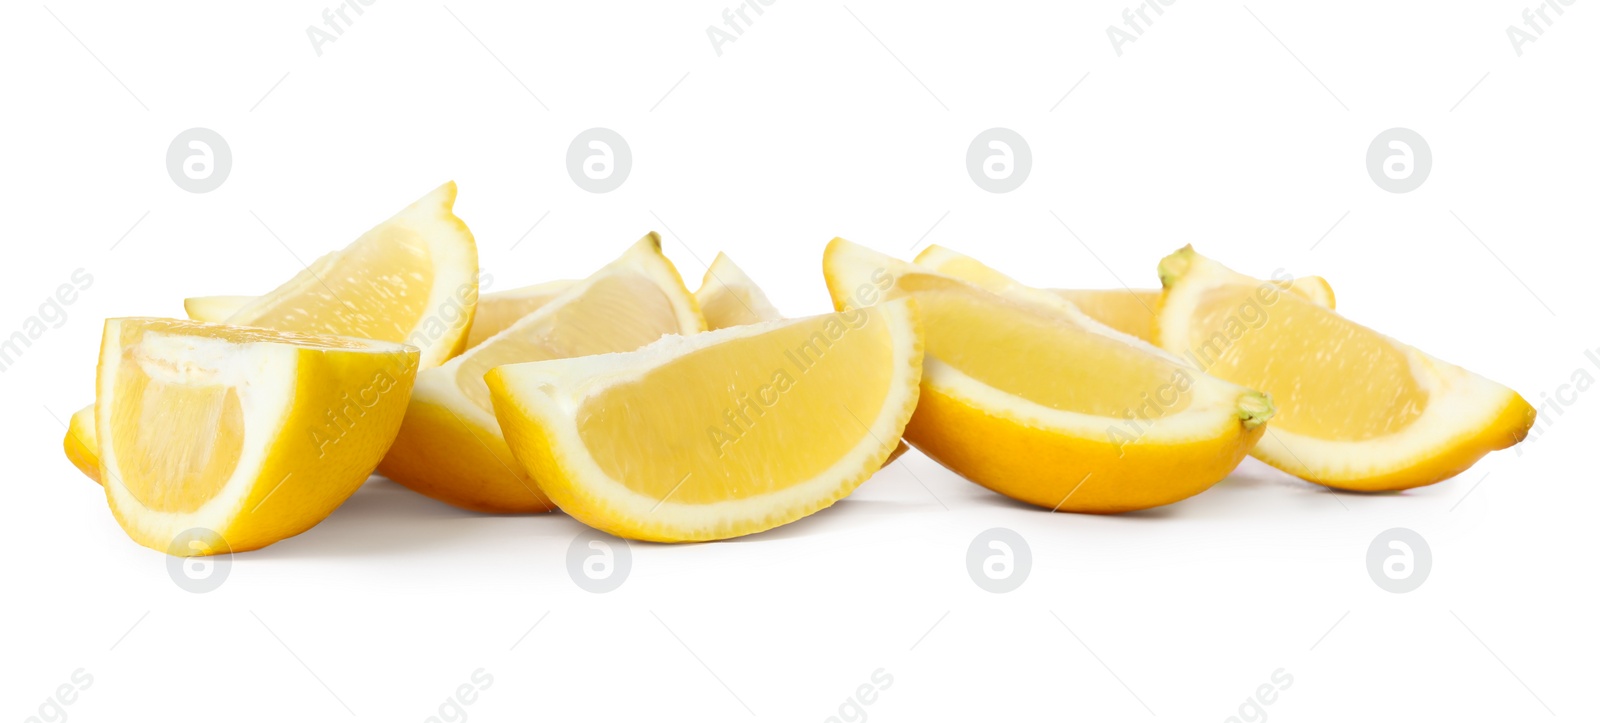 Photo of Fresh ripe lemon slices on white background